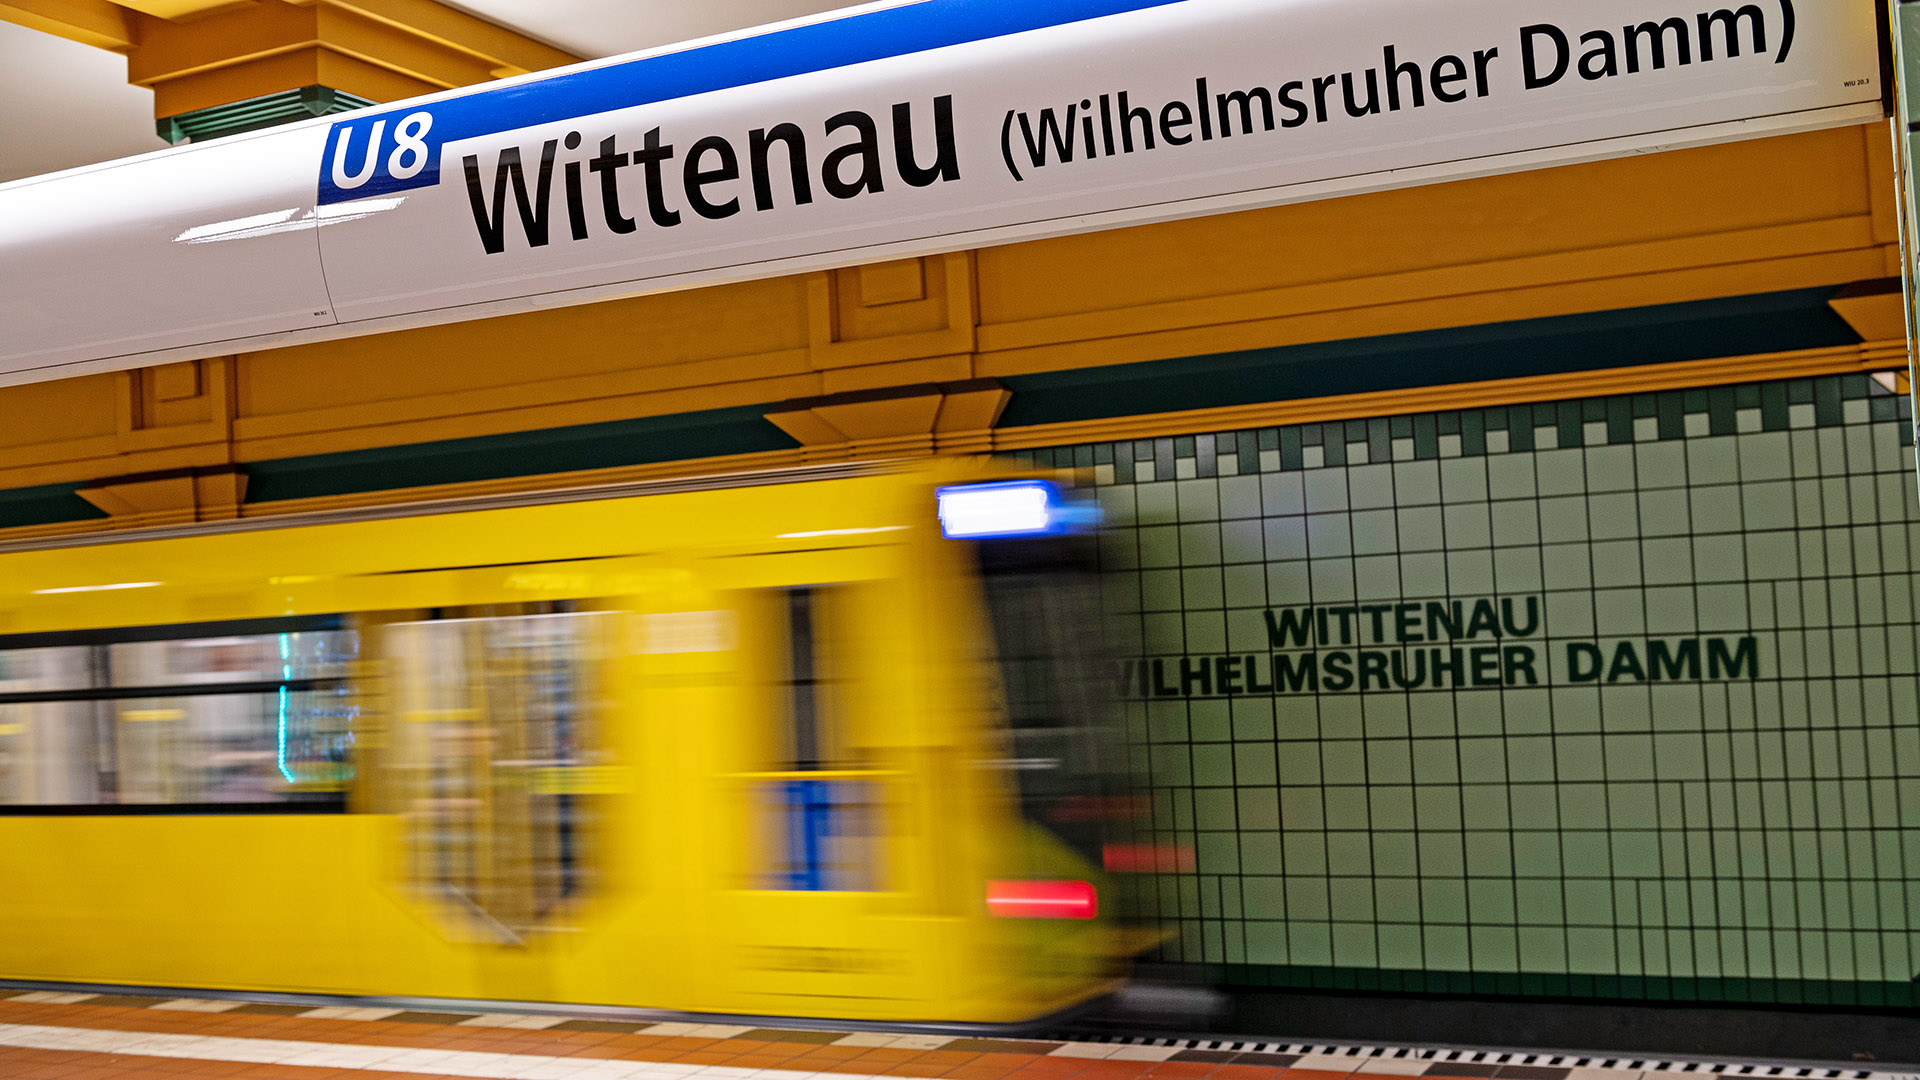 Symbolbild:Die U-Bahn der Linie 8 fährt in die Station Wittenau ein.(Quelle:picture alliance/dpa/F.Sommer)